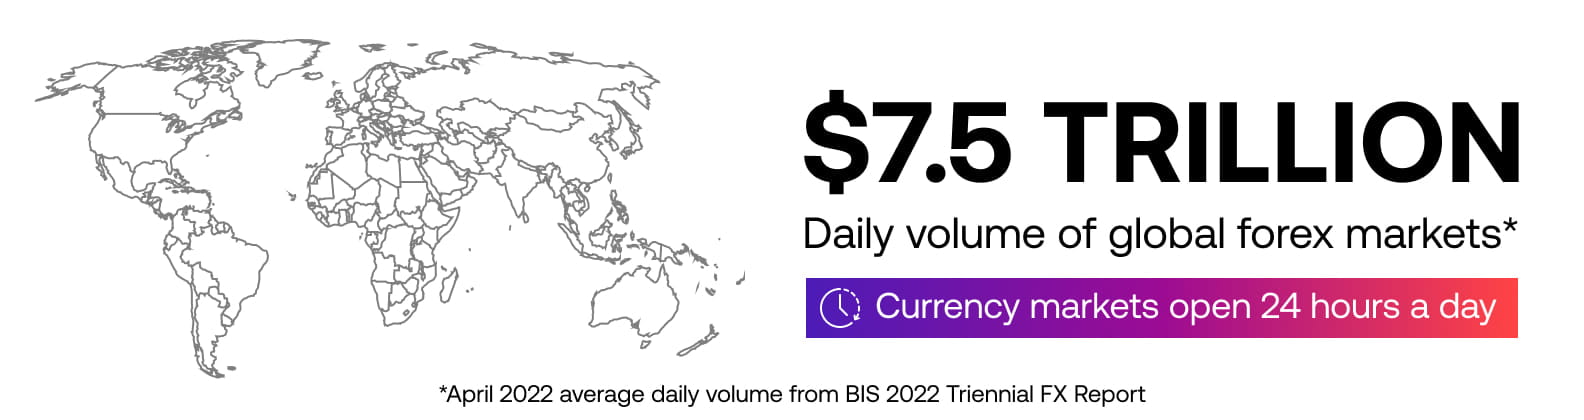 CIAU_FX trading daily volume